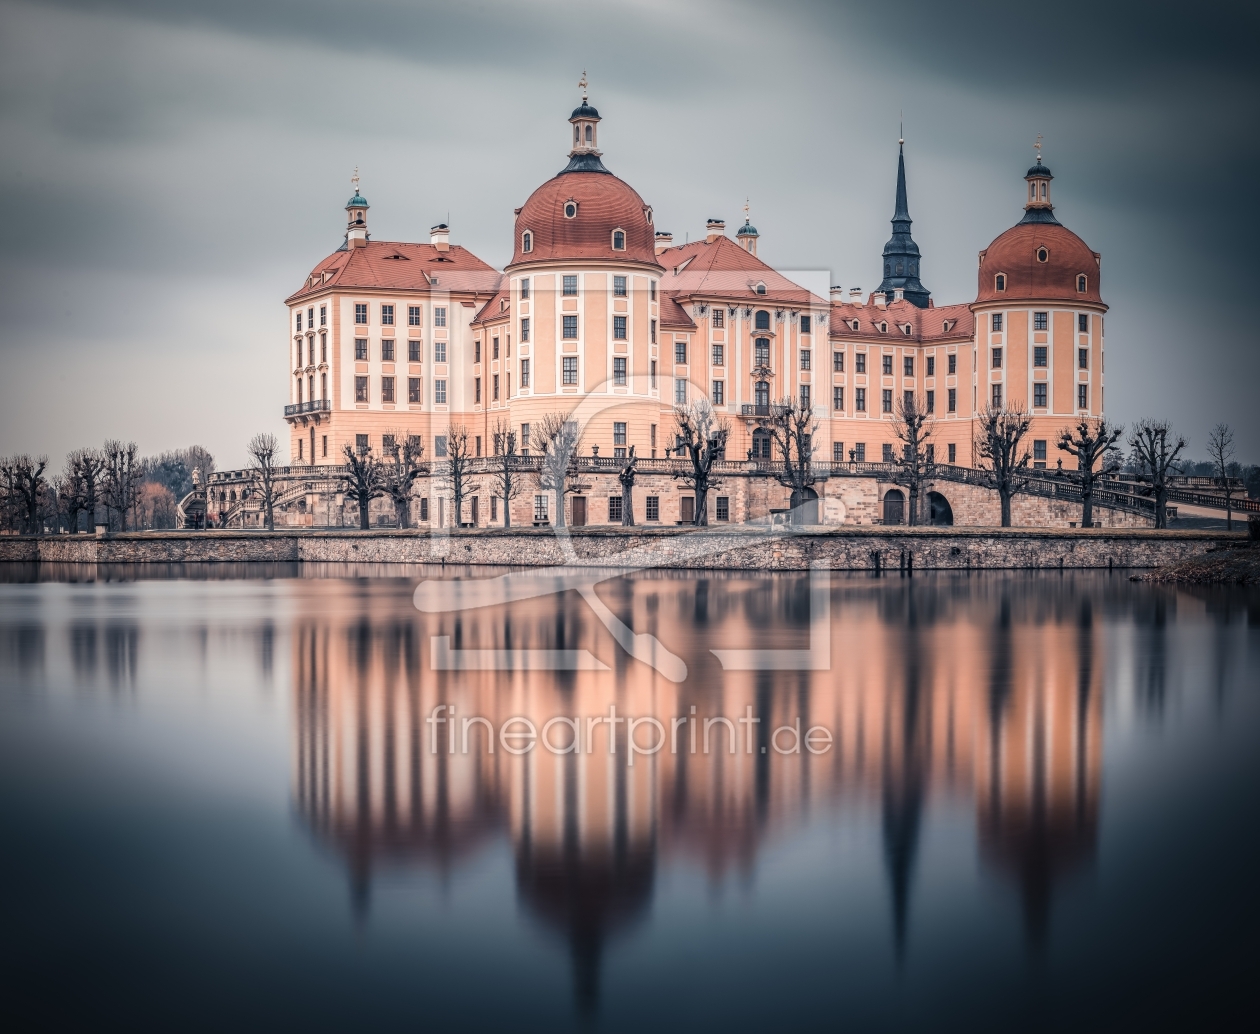 Moritzburg als Schloss Dresden Leinwanddruck -